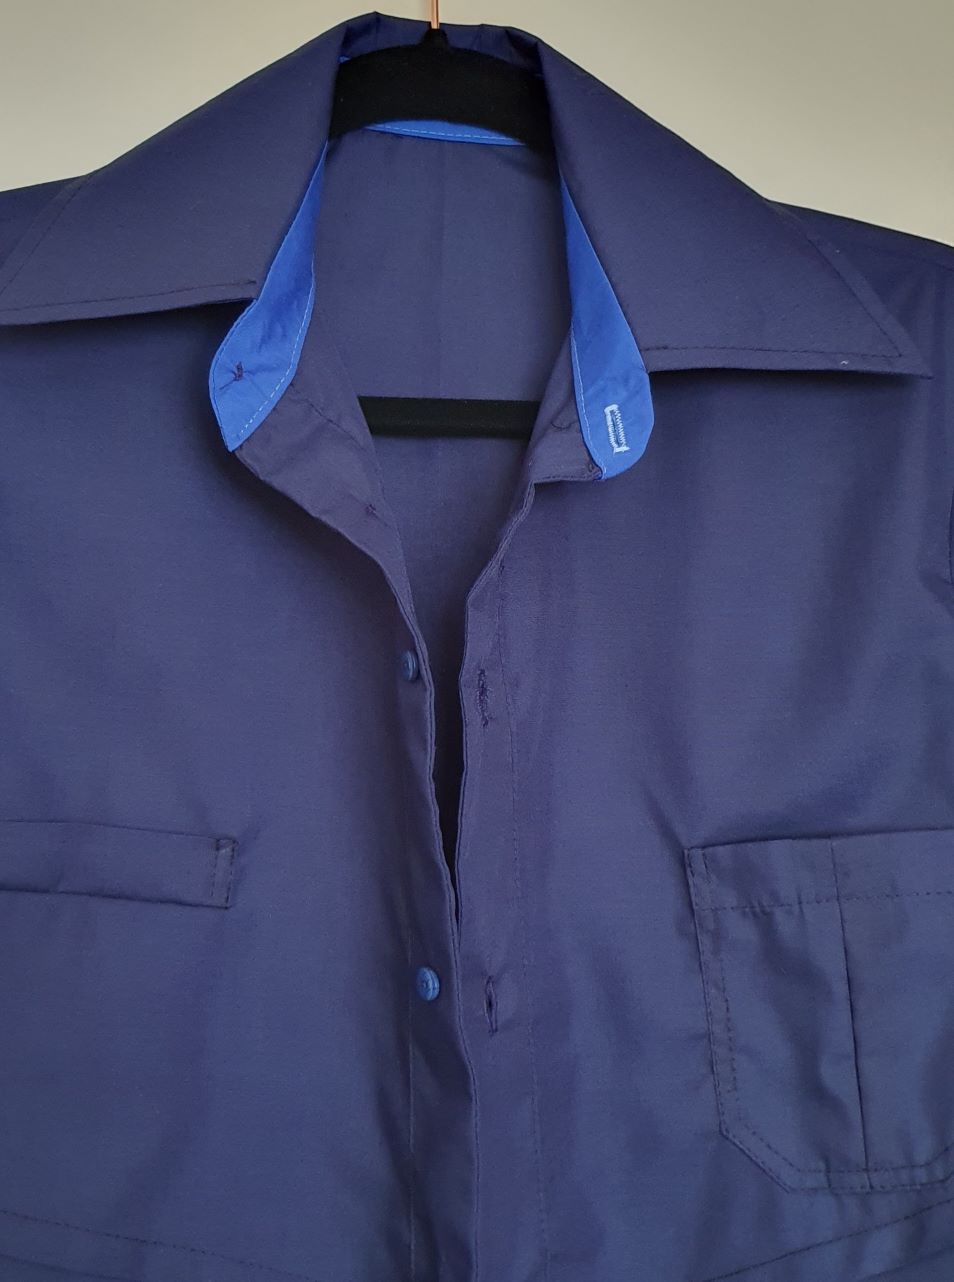  2 shade blue man's shirt 